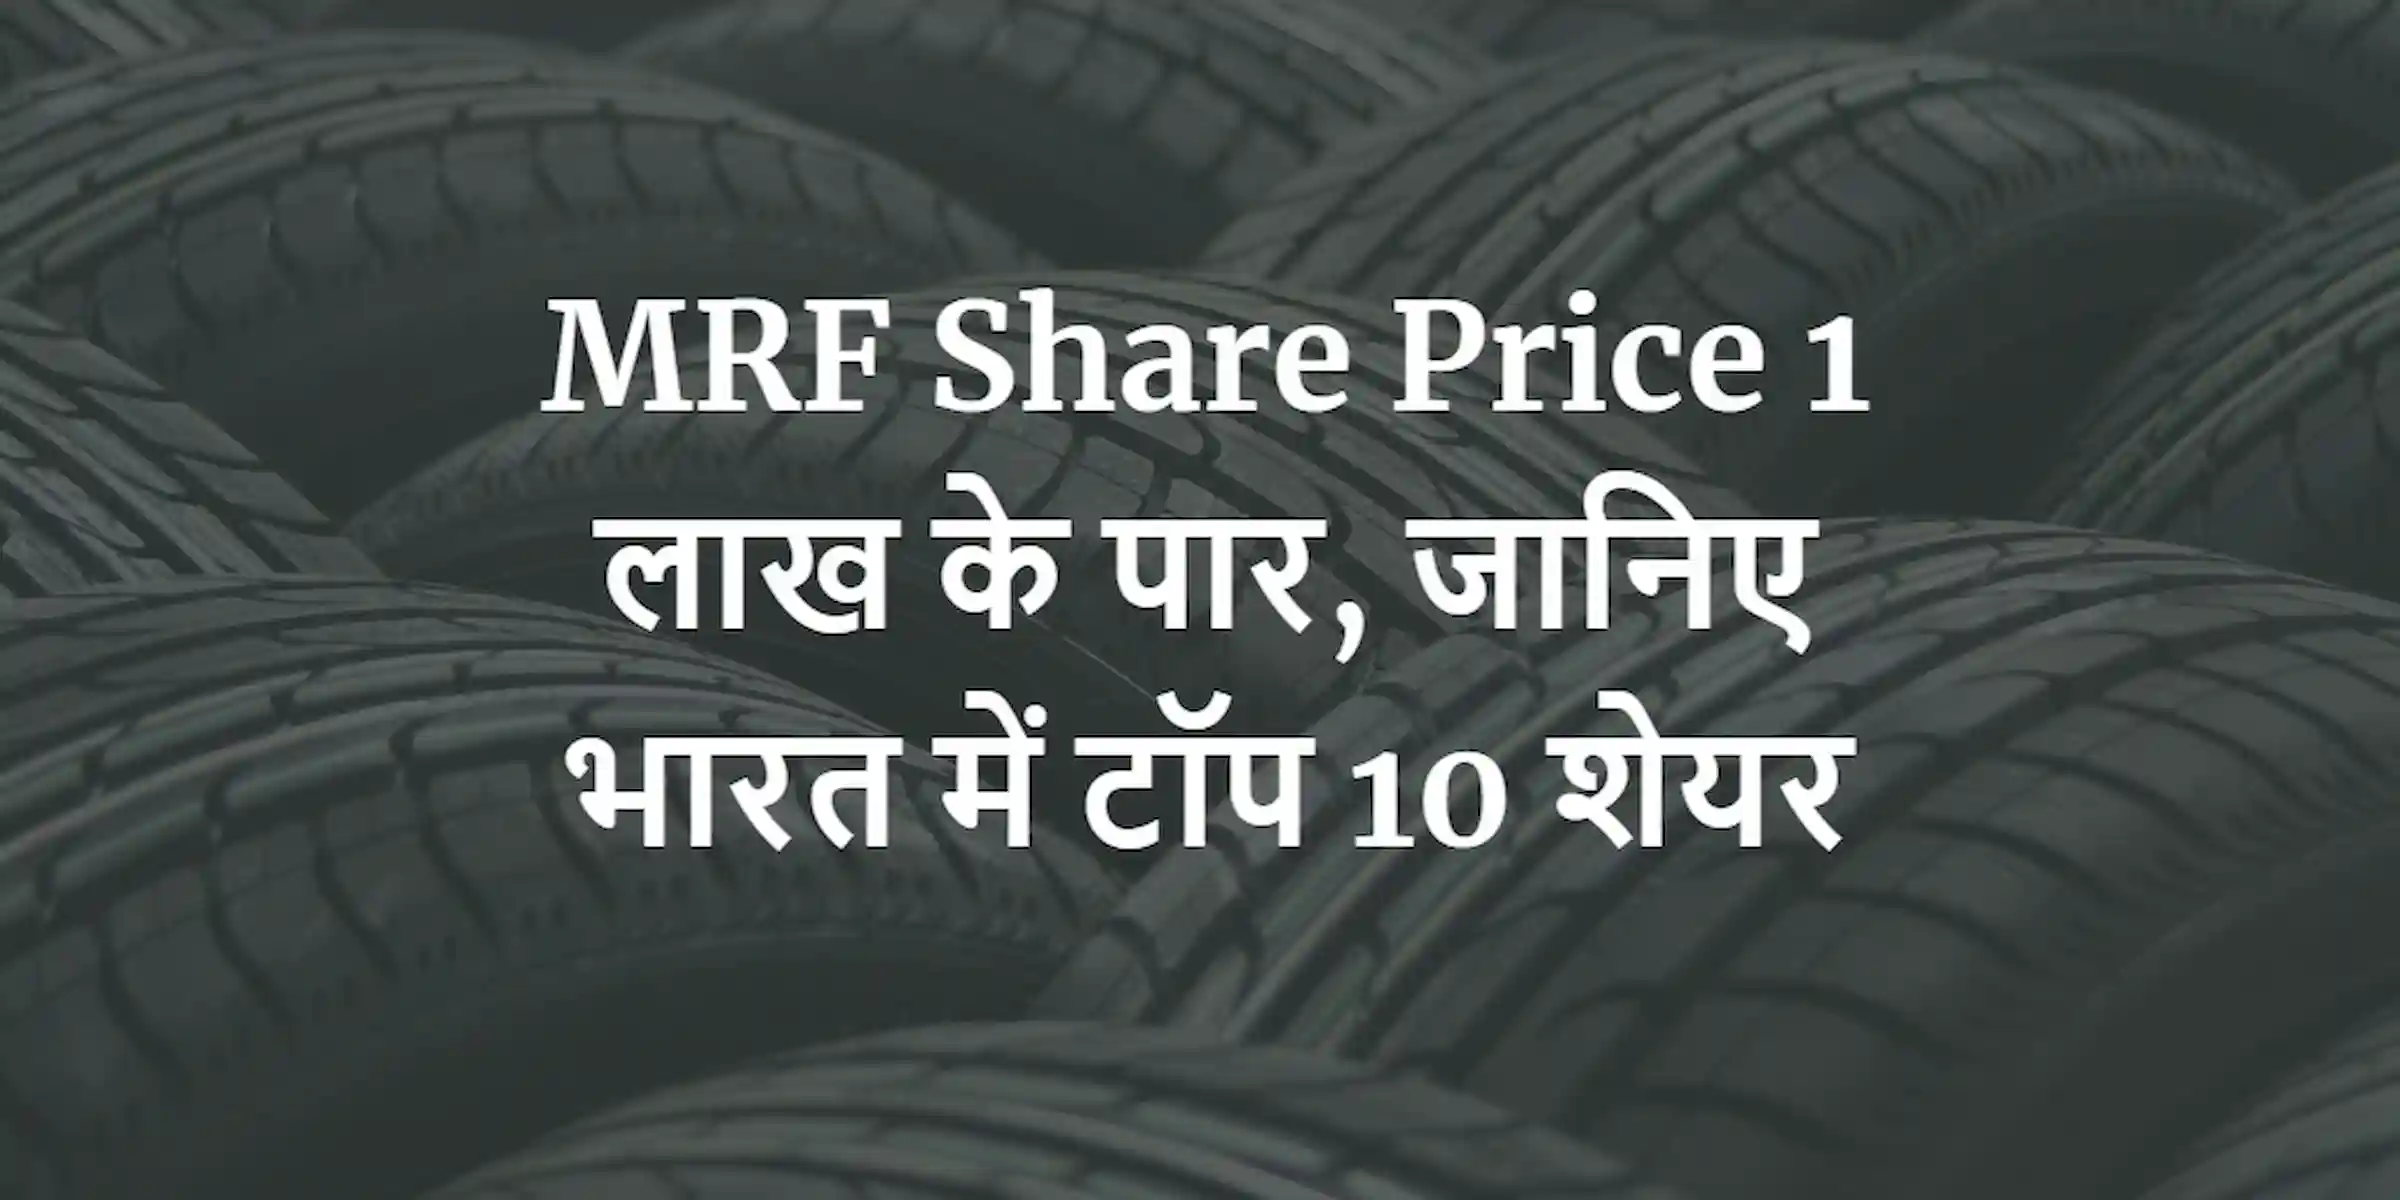 MRF Share Price 1 लाख के पार, जानिए भारत में टॉप 10 शेयर